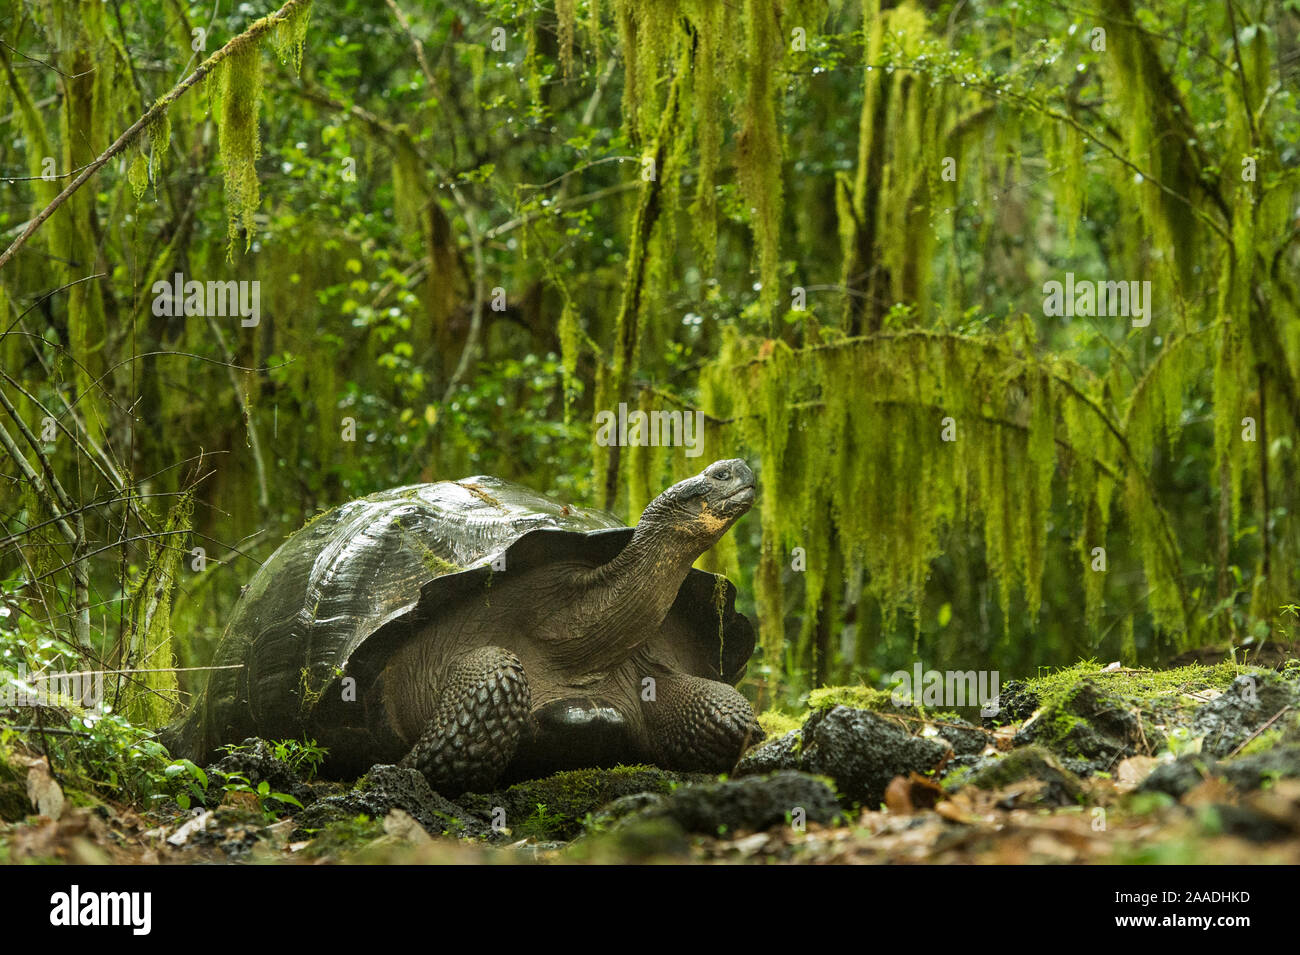 Galapagos giant tortoise (Chelonoidis nigra) in the forest, Santa Cruz Island, Galapagos. Stock Photo